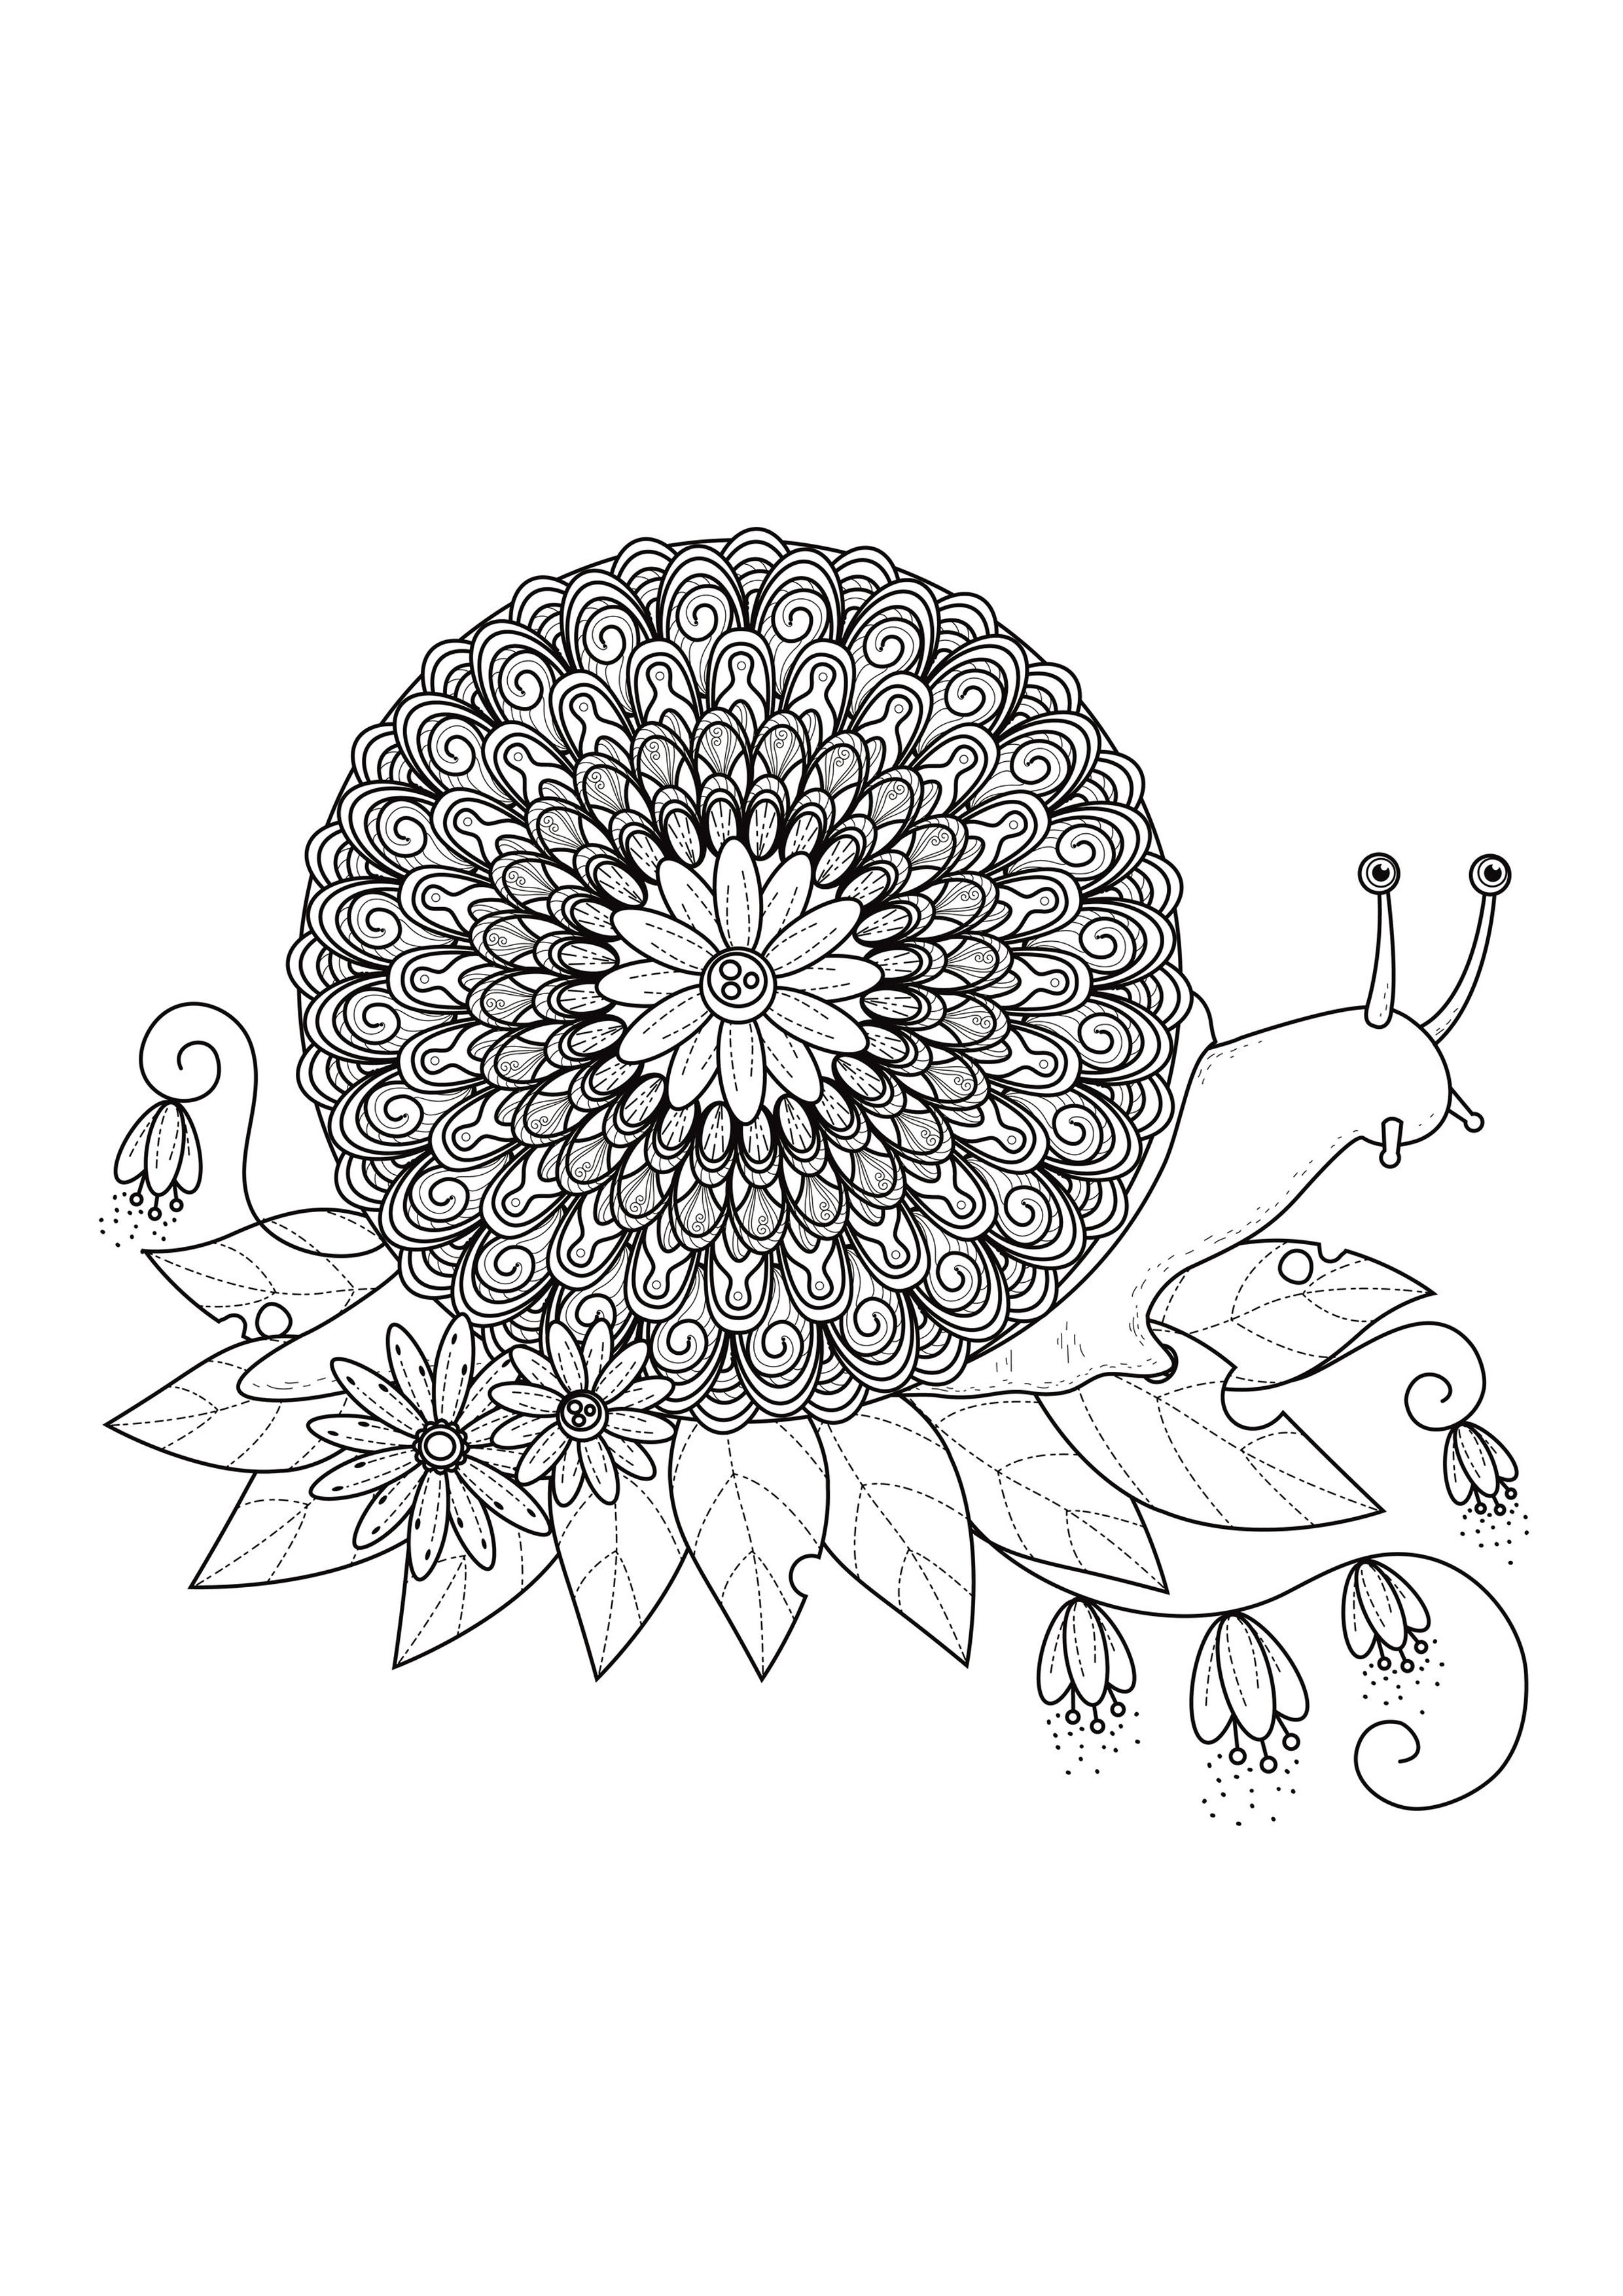 Préparez vos feutres et crayons pour réaliser la mise en couleur de ce Mandala 'escargot' plein de petits détails et zones intriquées.